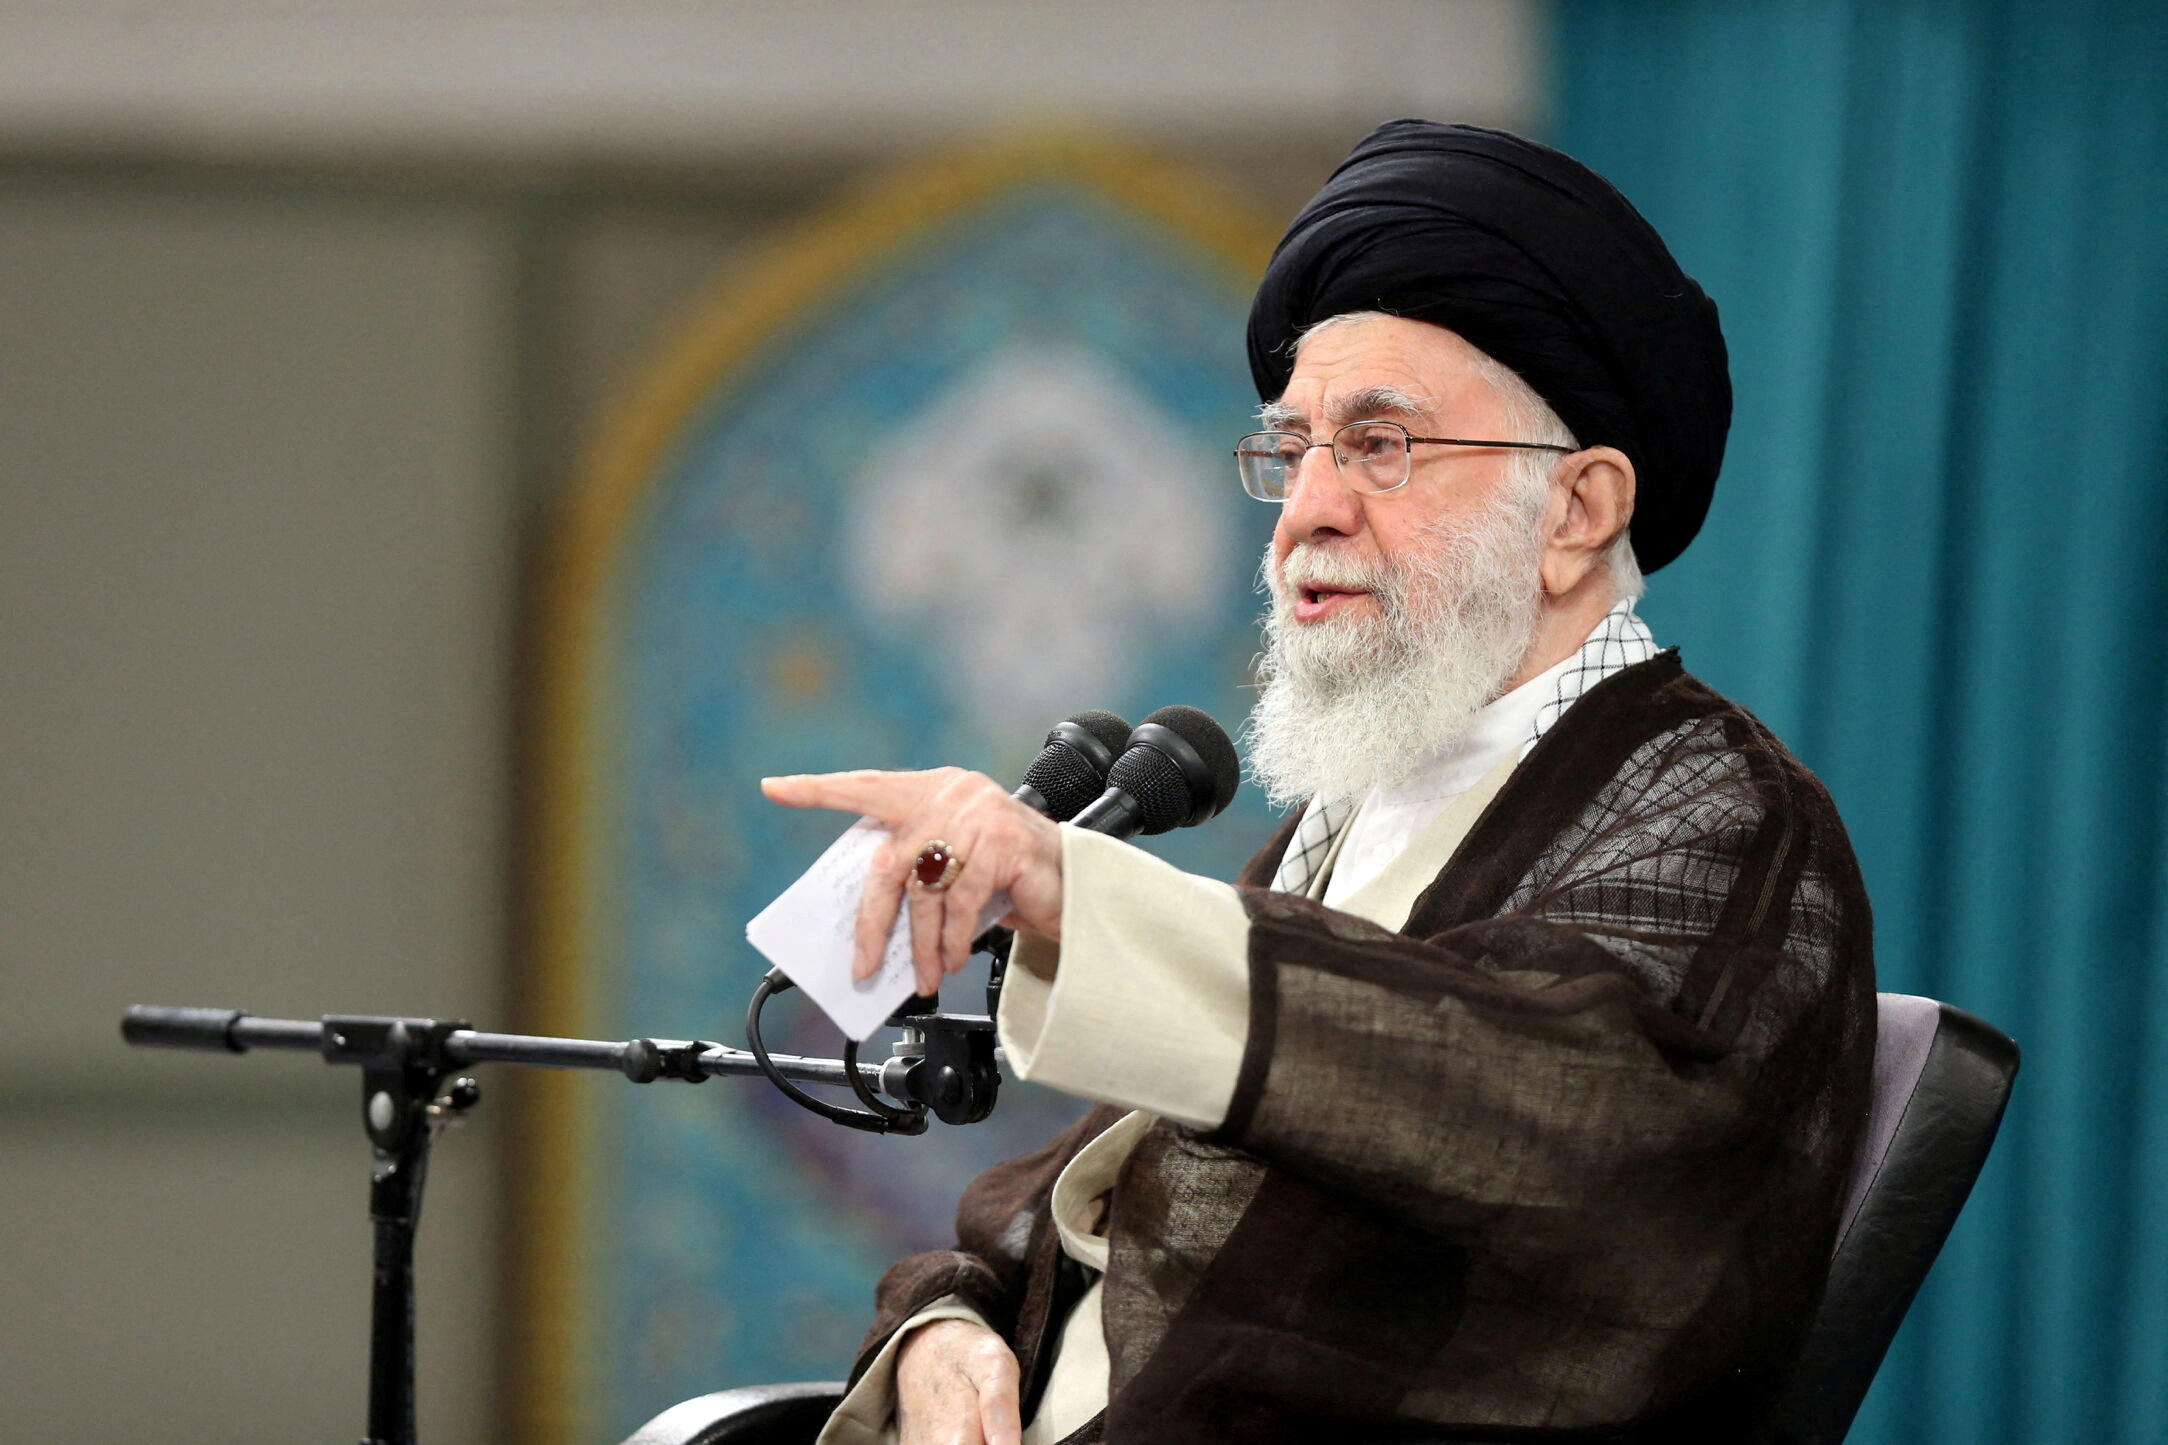 Le guide suprême de la révolution islamique, l'Ayatollah Ali Khamenei, a fustigé les Etats-Unis et la France pour leur soutien à l'état hébreu. Reuters/Office of the Iranian Supreme Leader